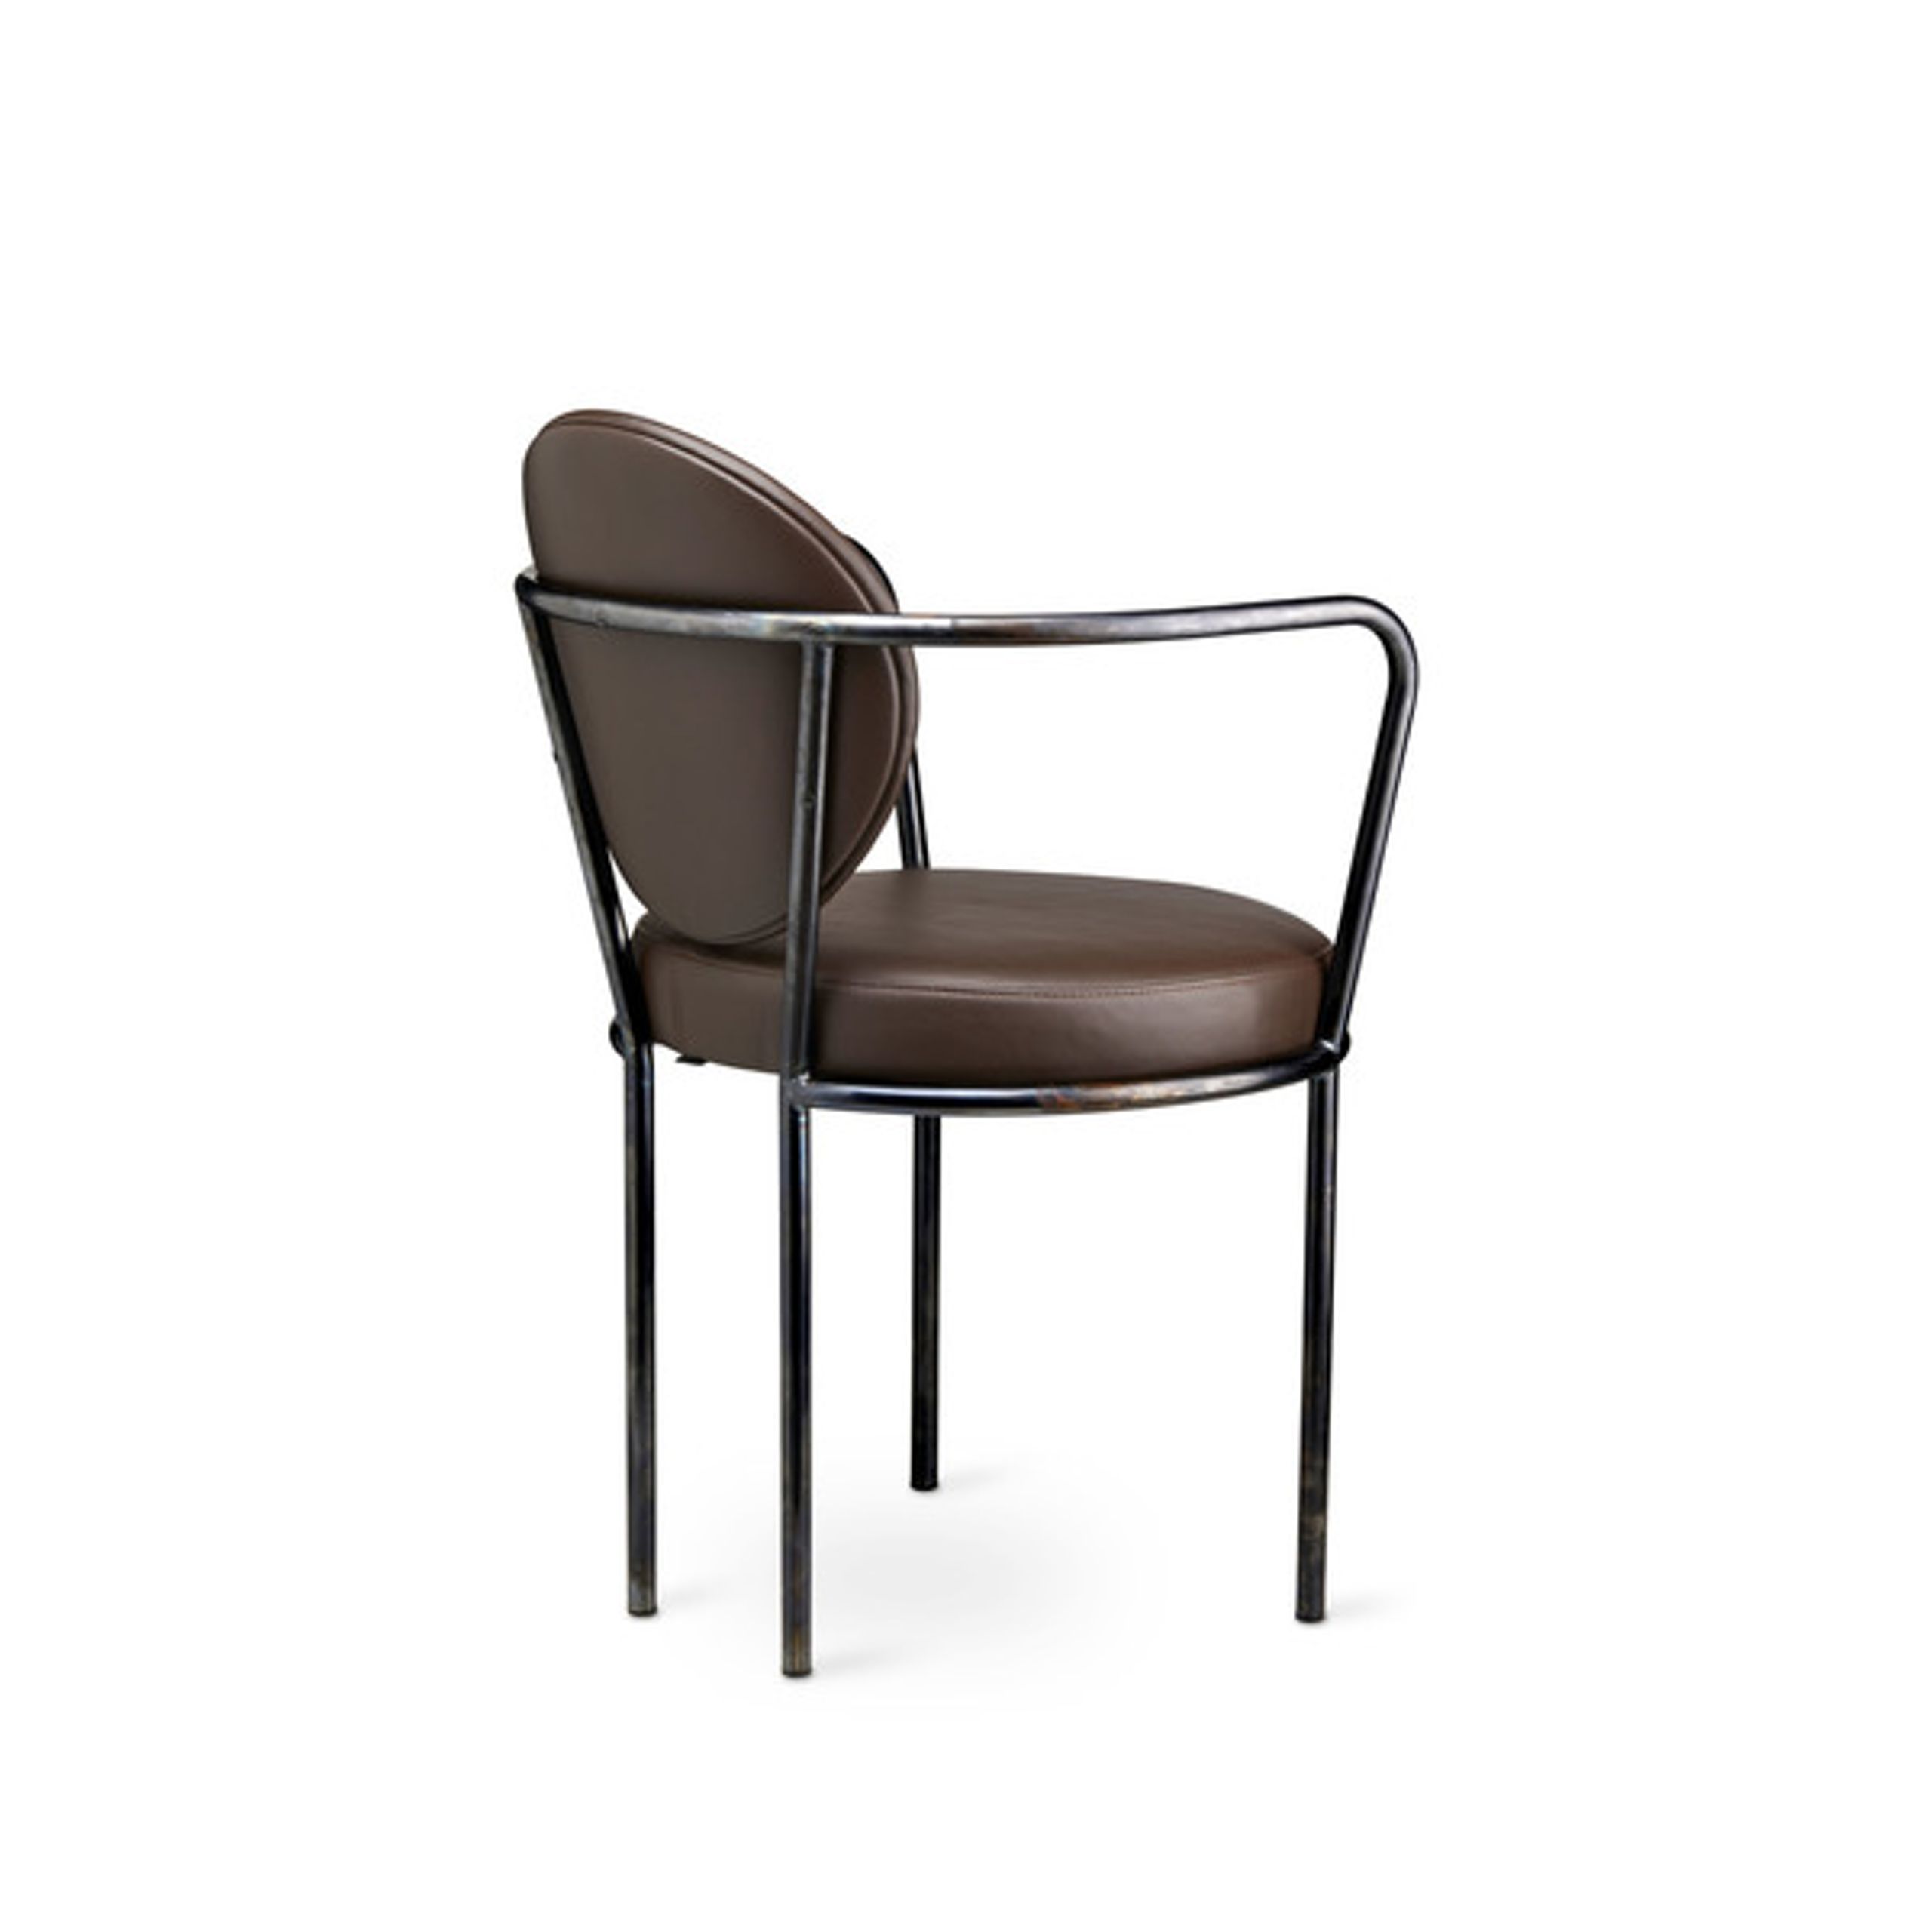 Design By Us - Esstischstuhl - Casablanca chair - Black Frame - Leather Sørensen Ultra - Brown